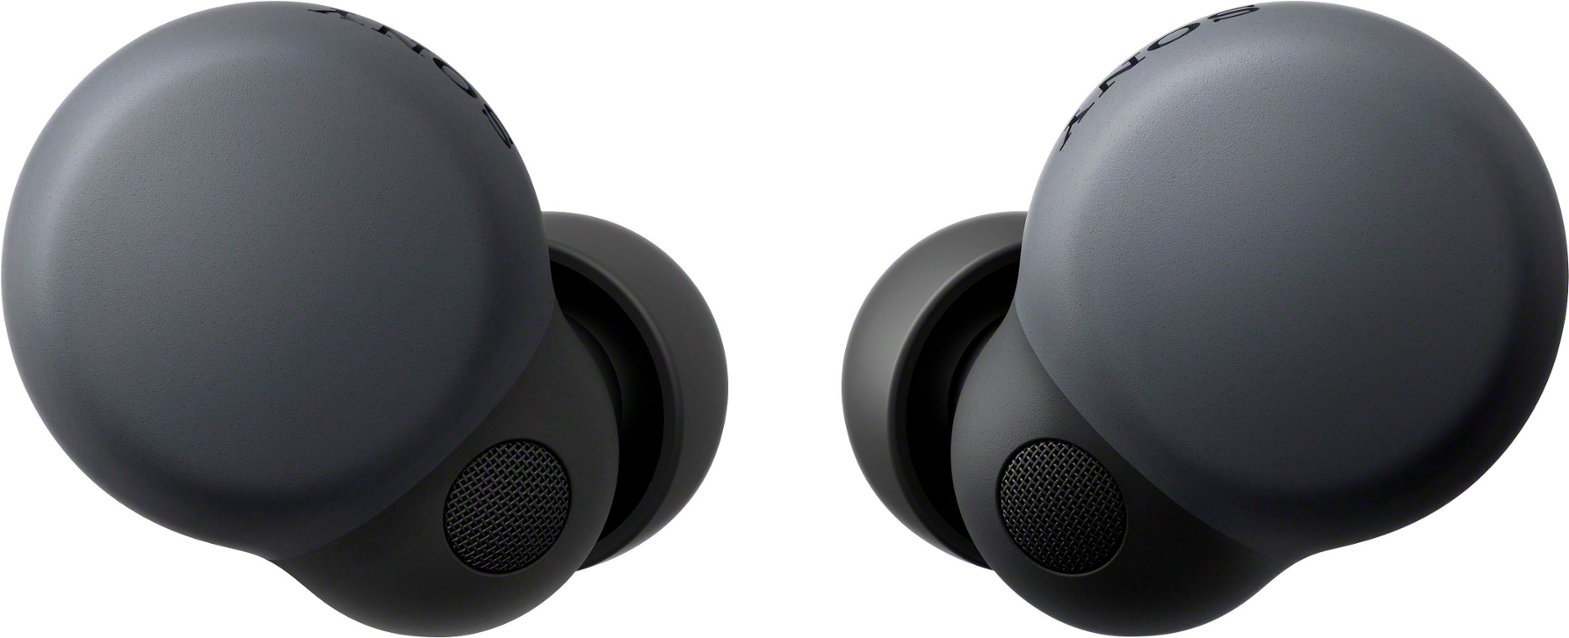 Sony - Link Buds S True Wireless Noise Canceling Earbuds - Black-Black